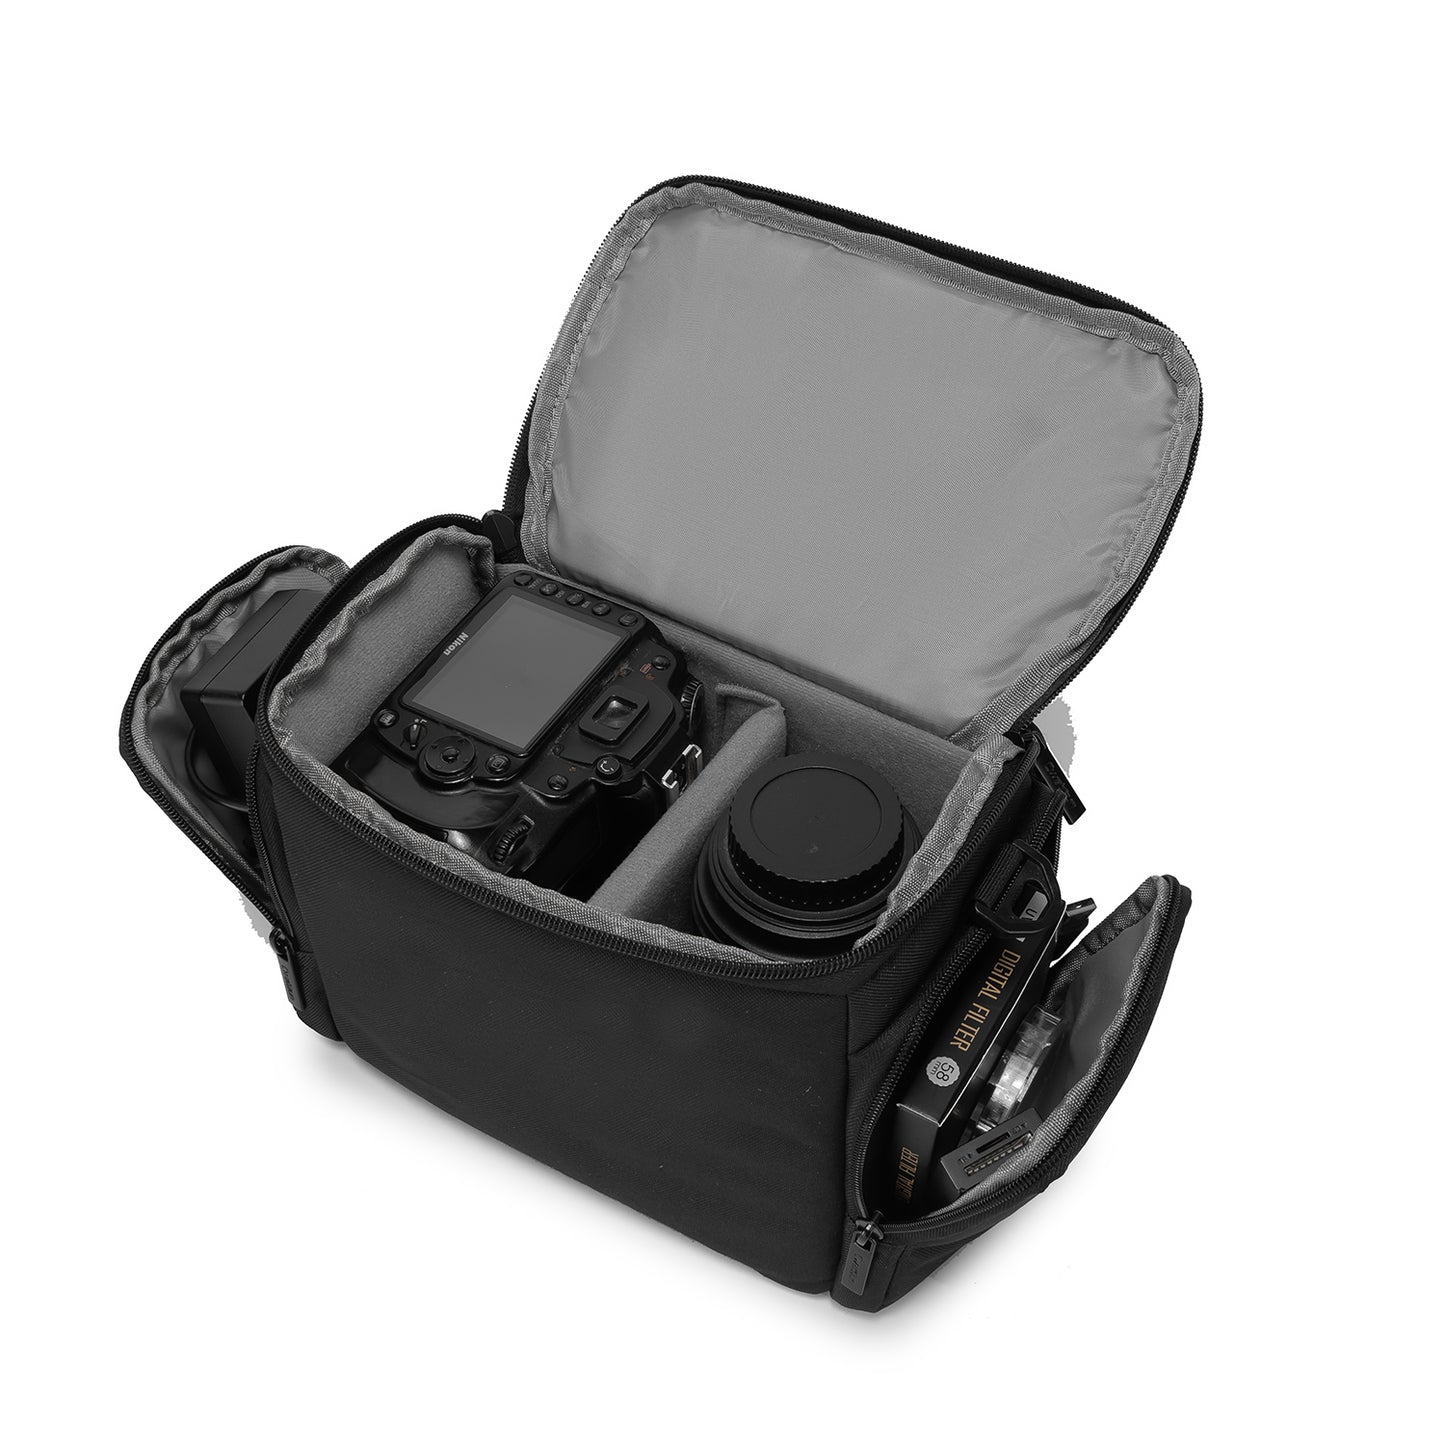 CADeN D11-L Waterproof Digital Dslr Slr Camera Bag